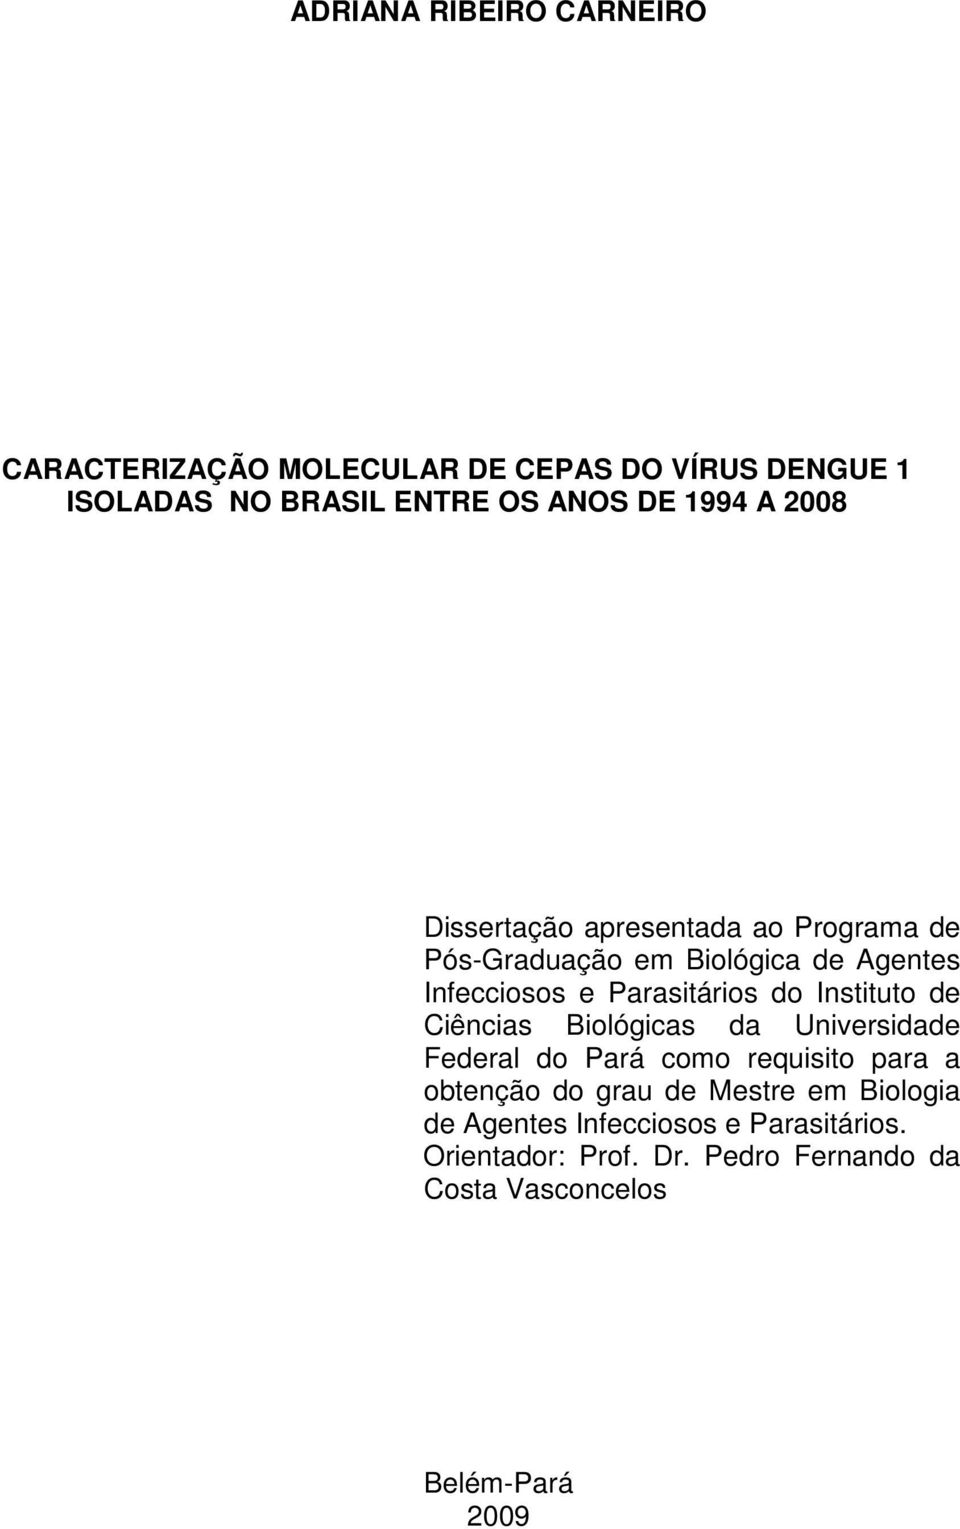 Instituto de Ciências Biológicas da Universidade Federal do Pará como requisito para a obtenção do grau de Mestre em